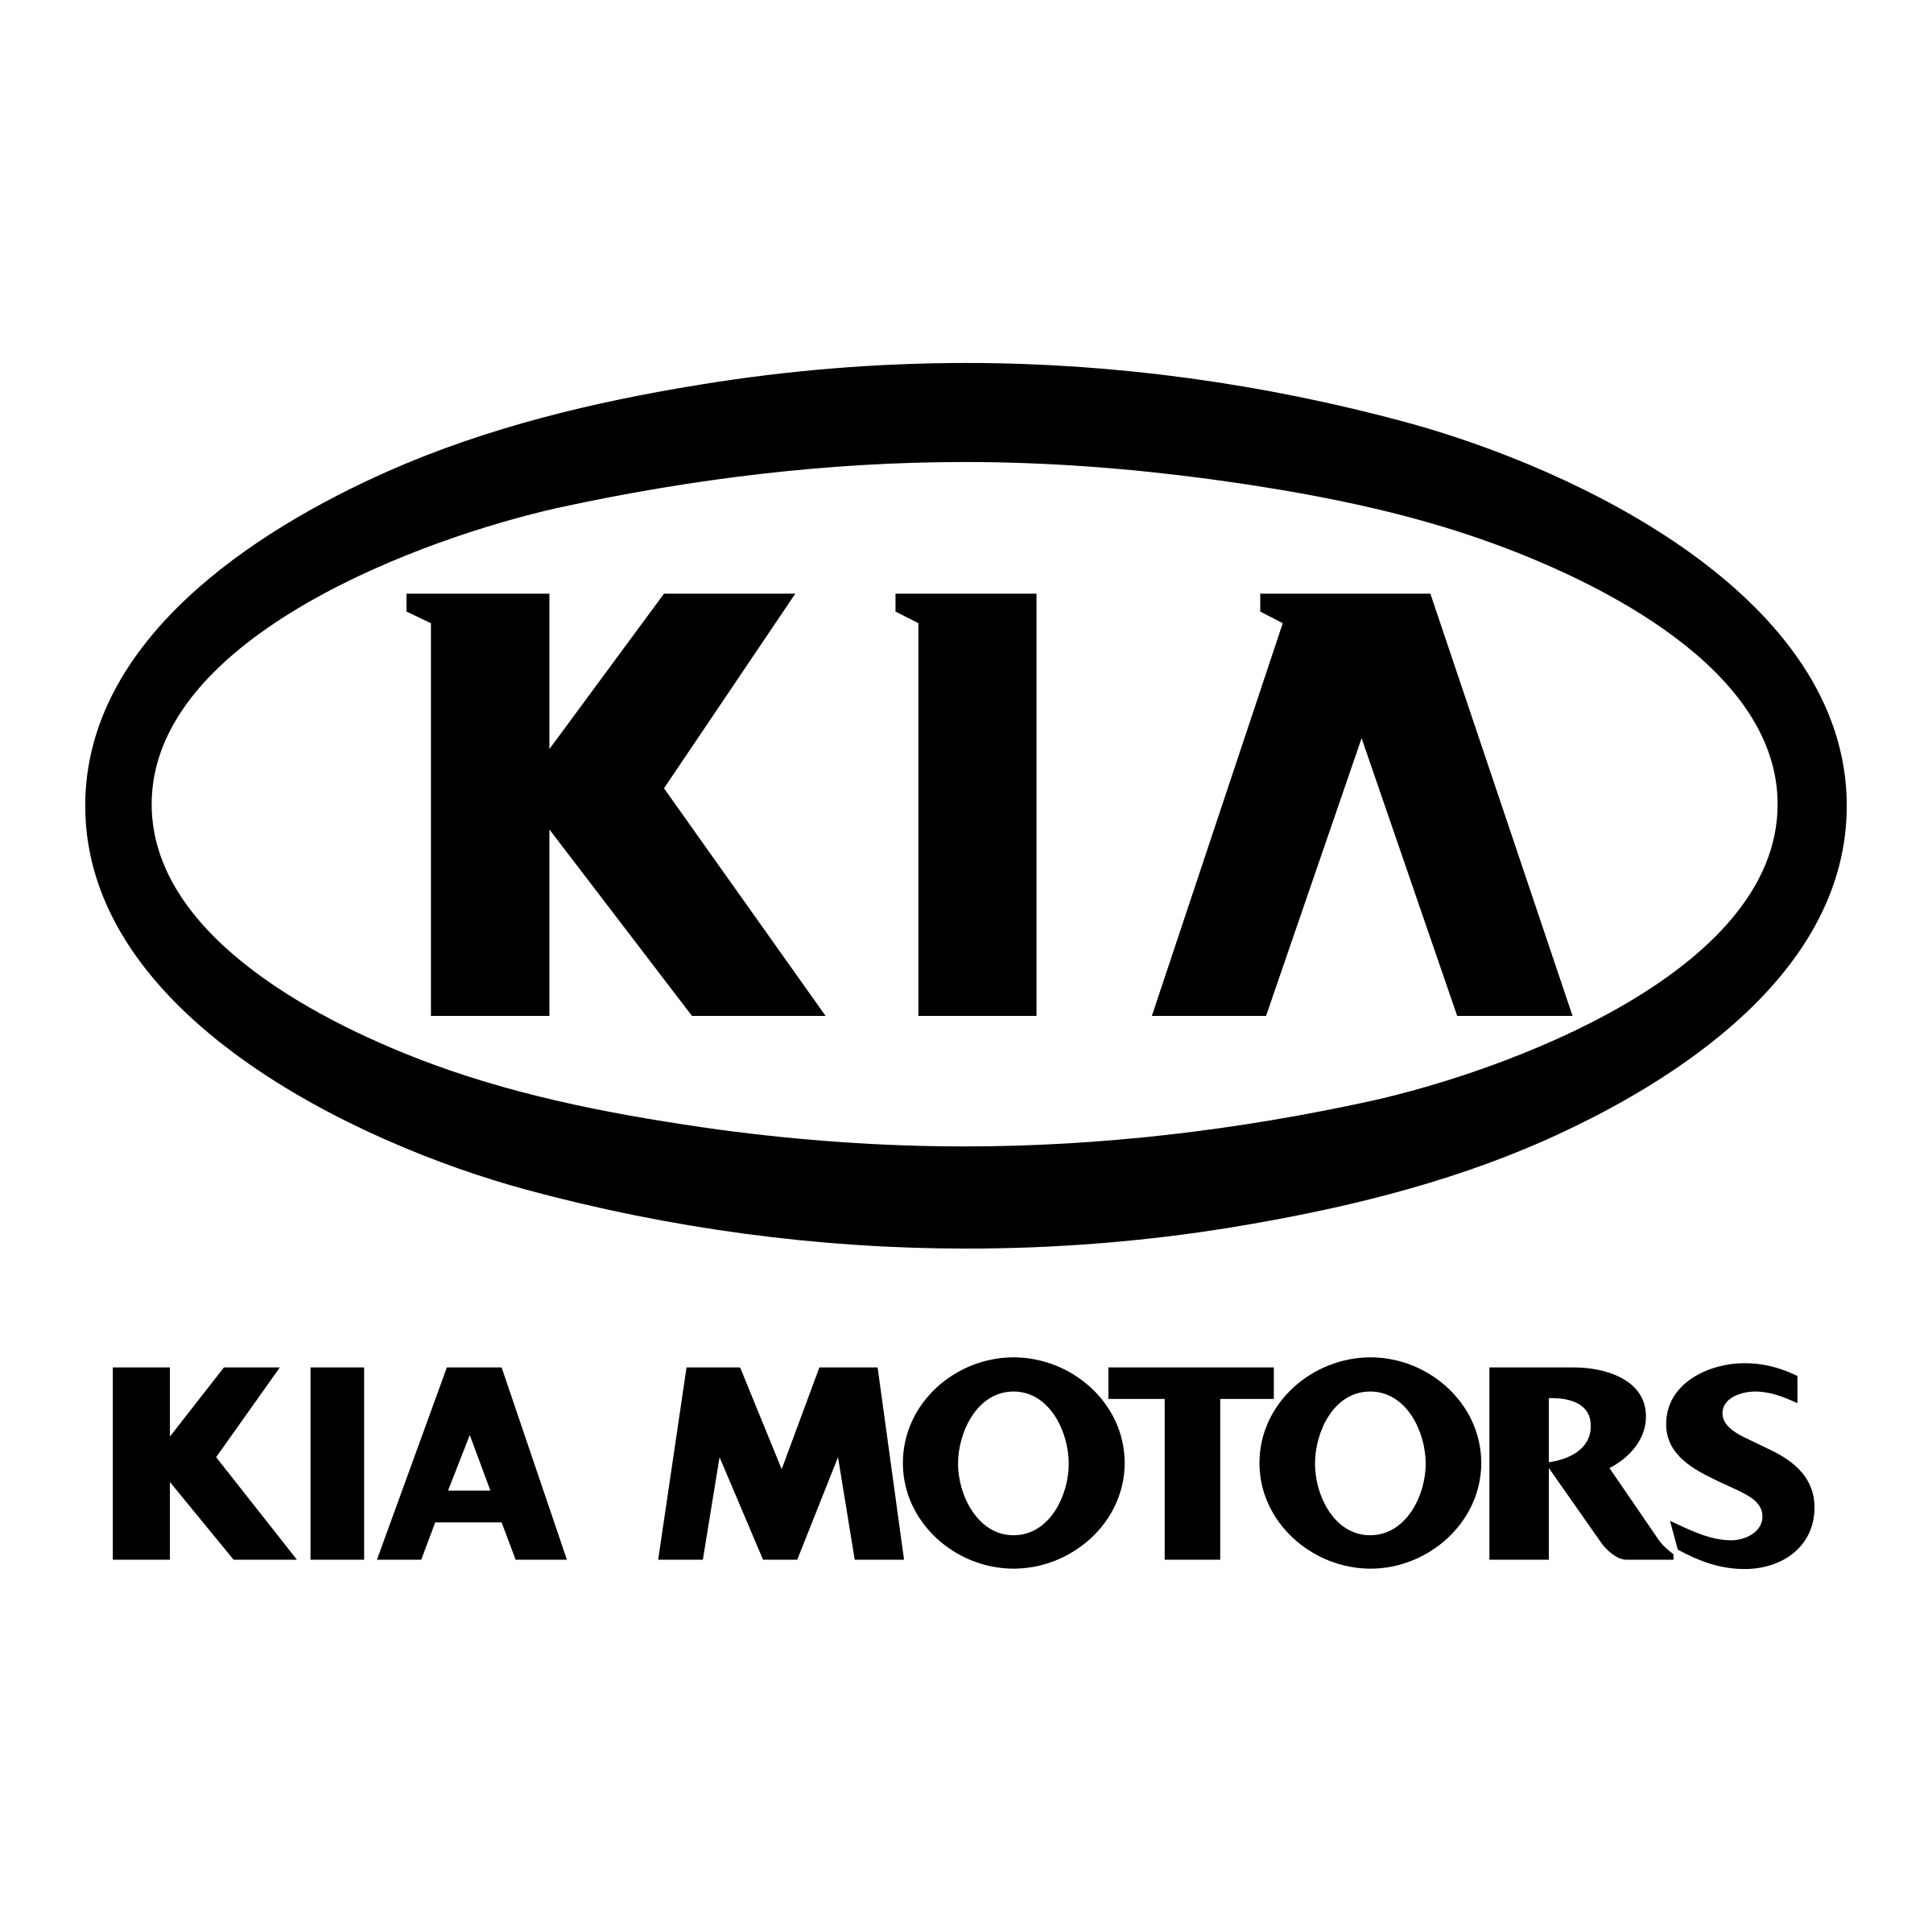 Kia Motors Logo - Kia Motors Logo PNG Transparent & SVG Vector - Freebie Supply